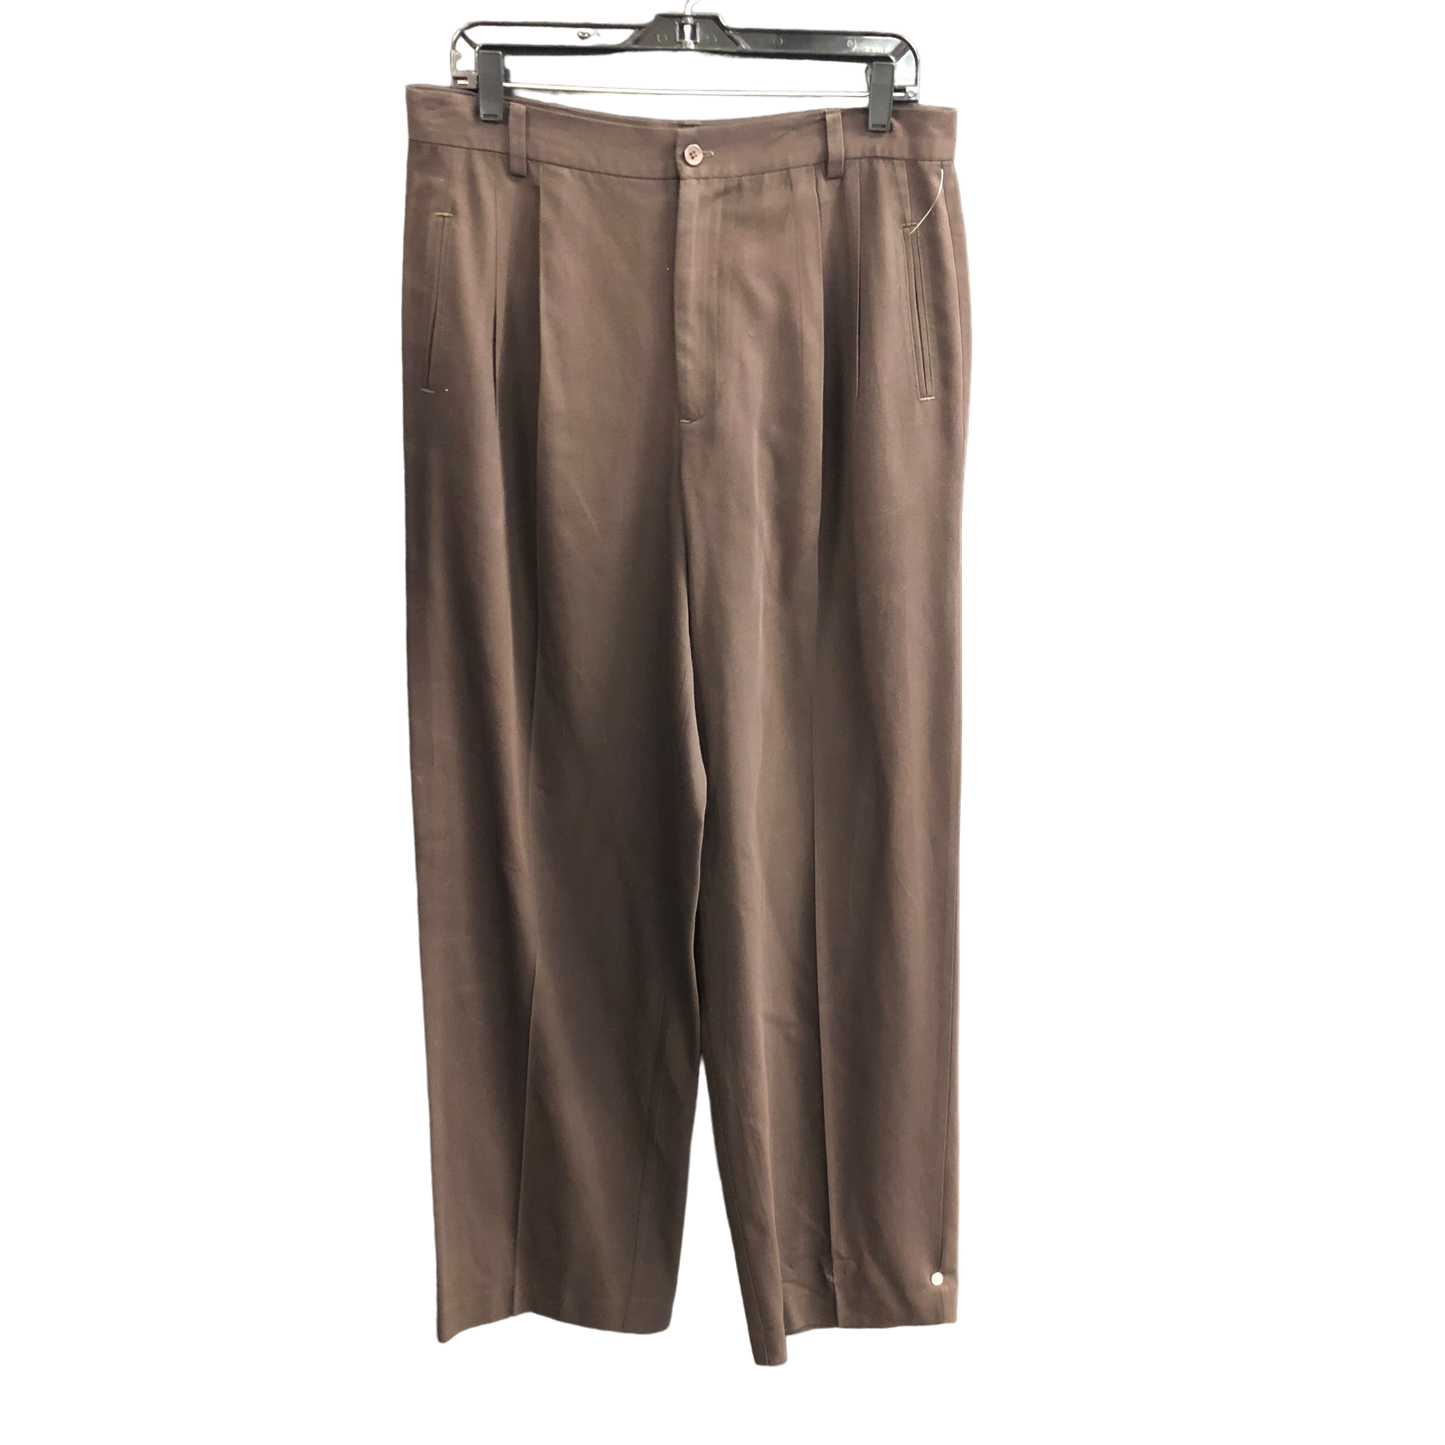 Brown Pants Work/dress Gap, Size 14